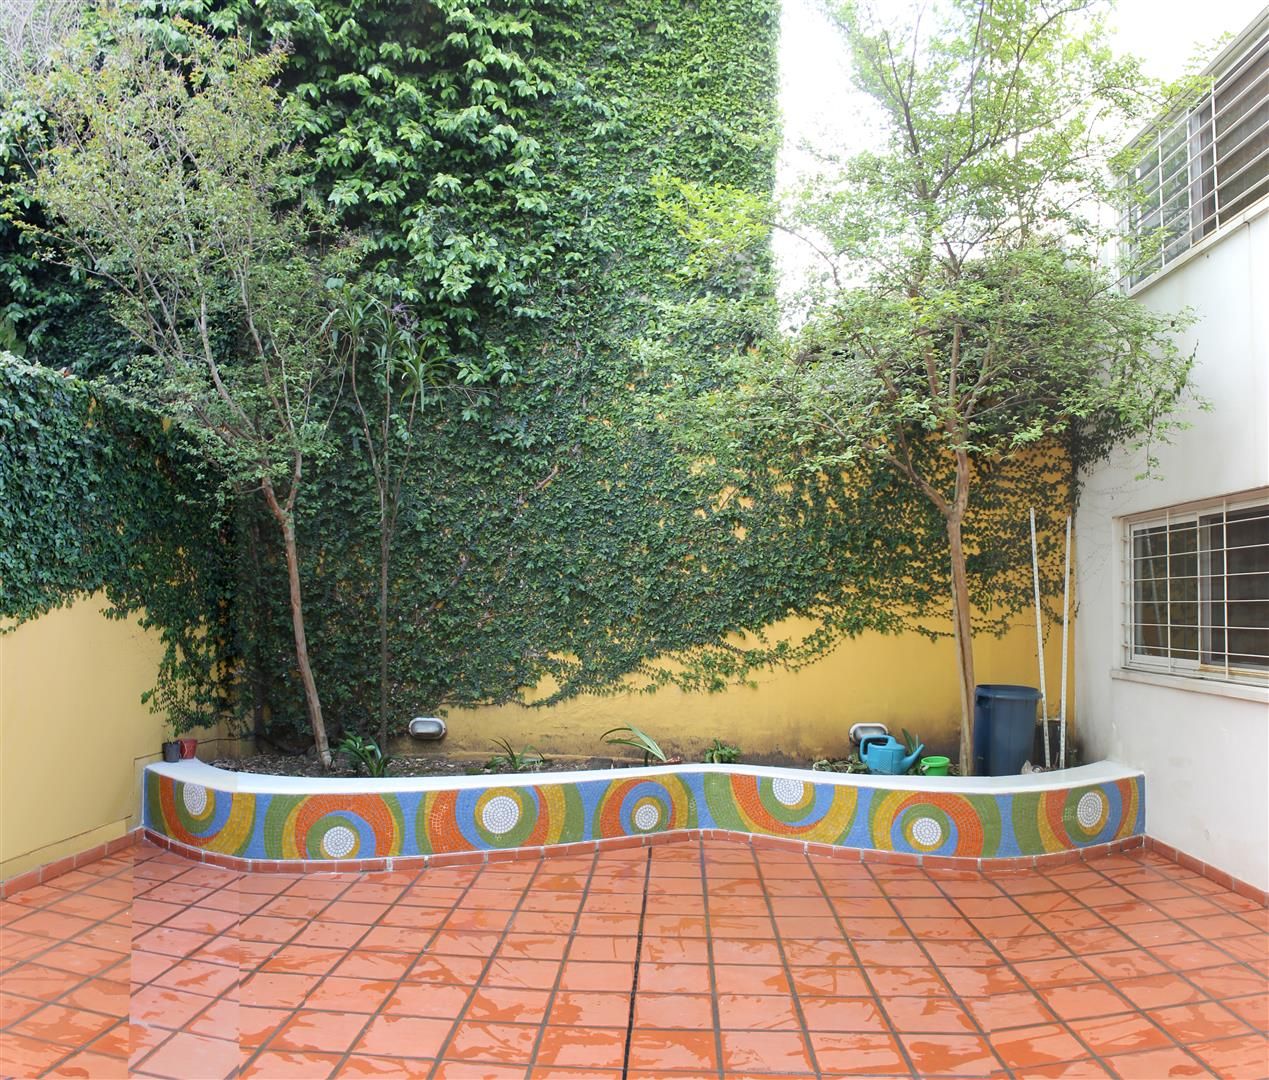 Cantero en Jardín Maternal, Compañía de Mosaicos Compañía de Mosaicos Vườn phong cách hiện đại